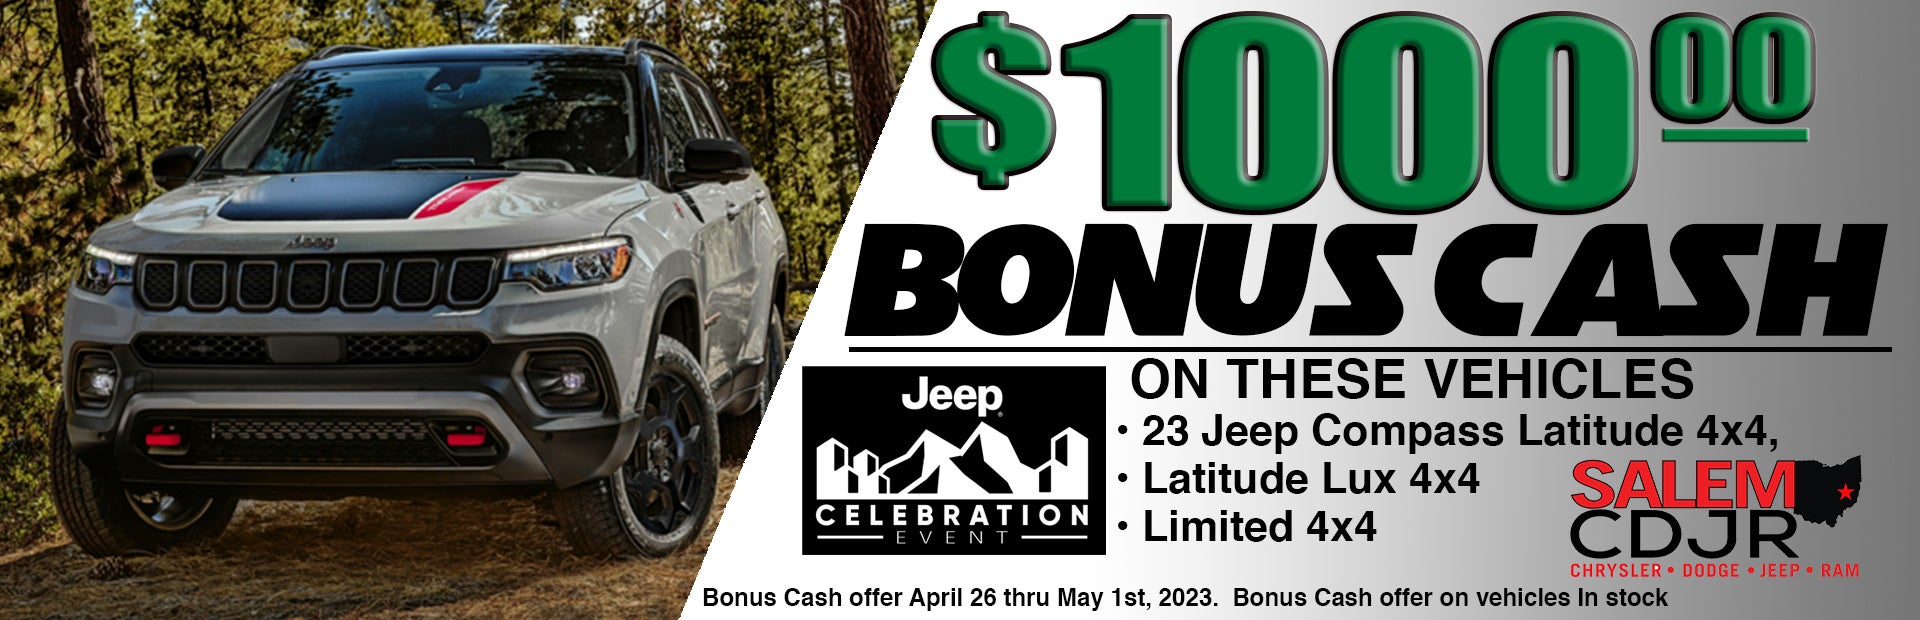 Jeep Bonus Cash